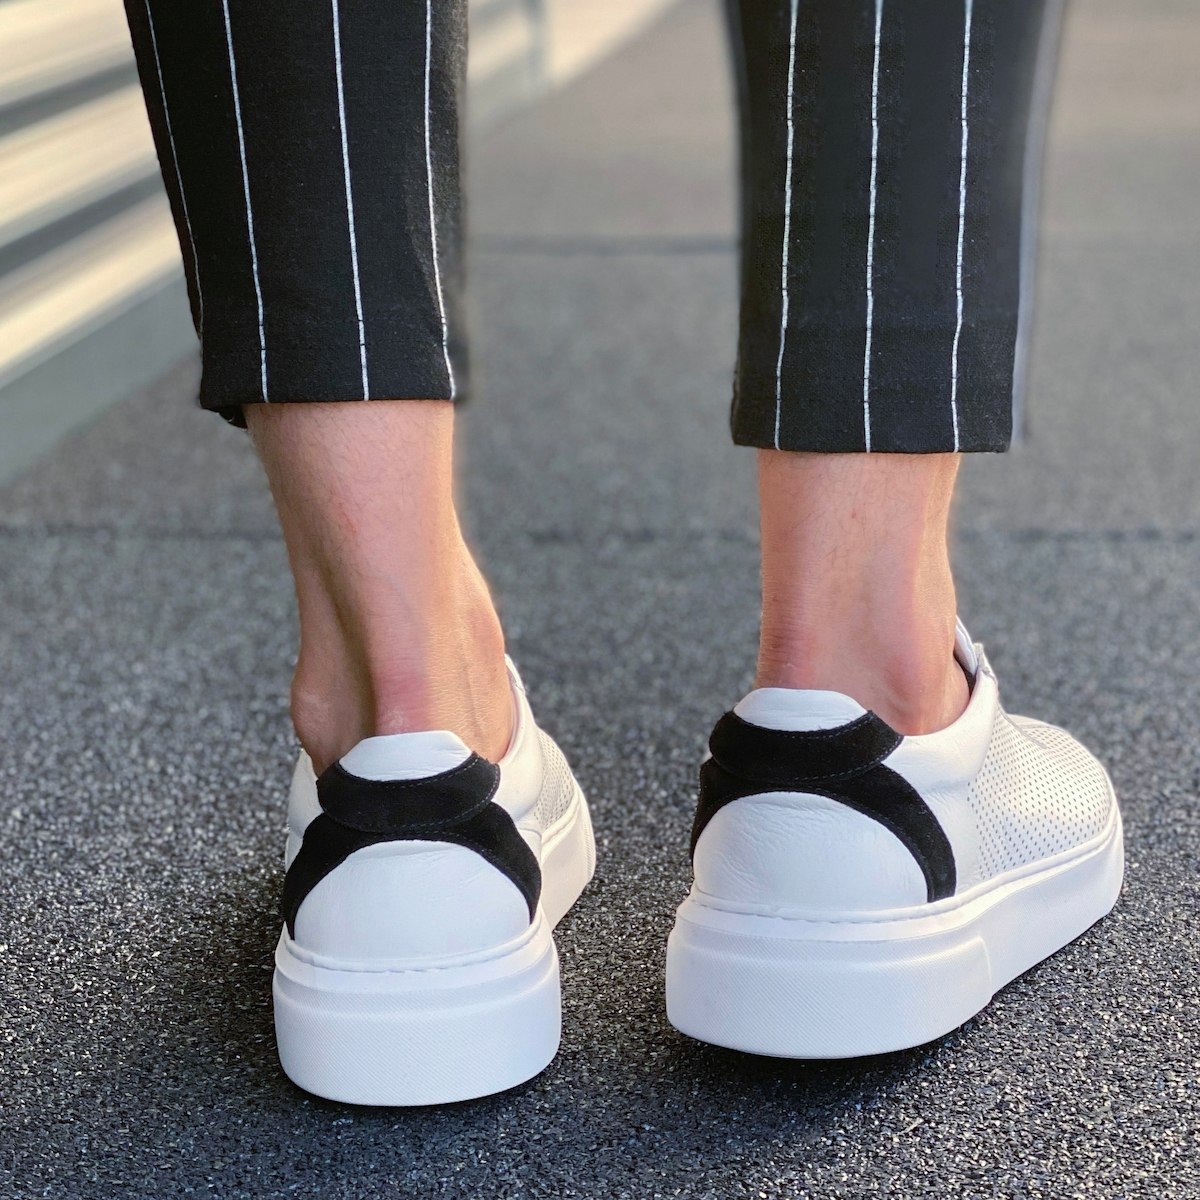 Herren Sneakers Aus Premium Leder Mit Loch Details Und Streifen In Weiß | Martin Valen